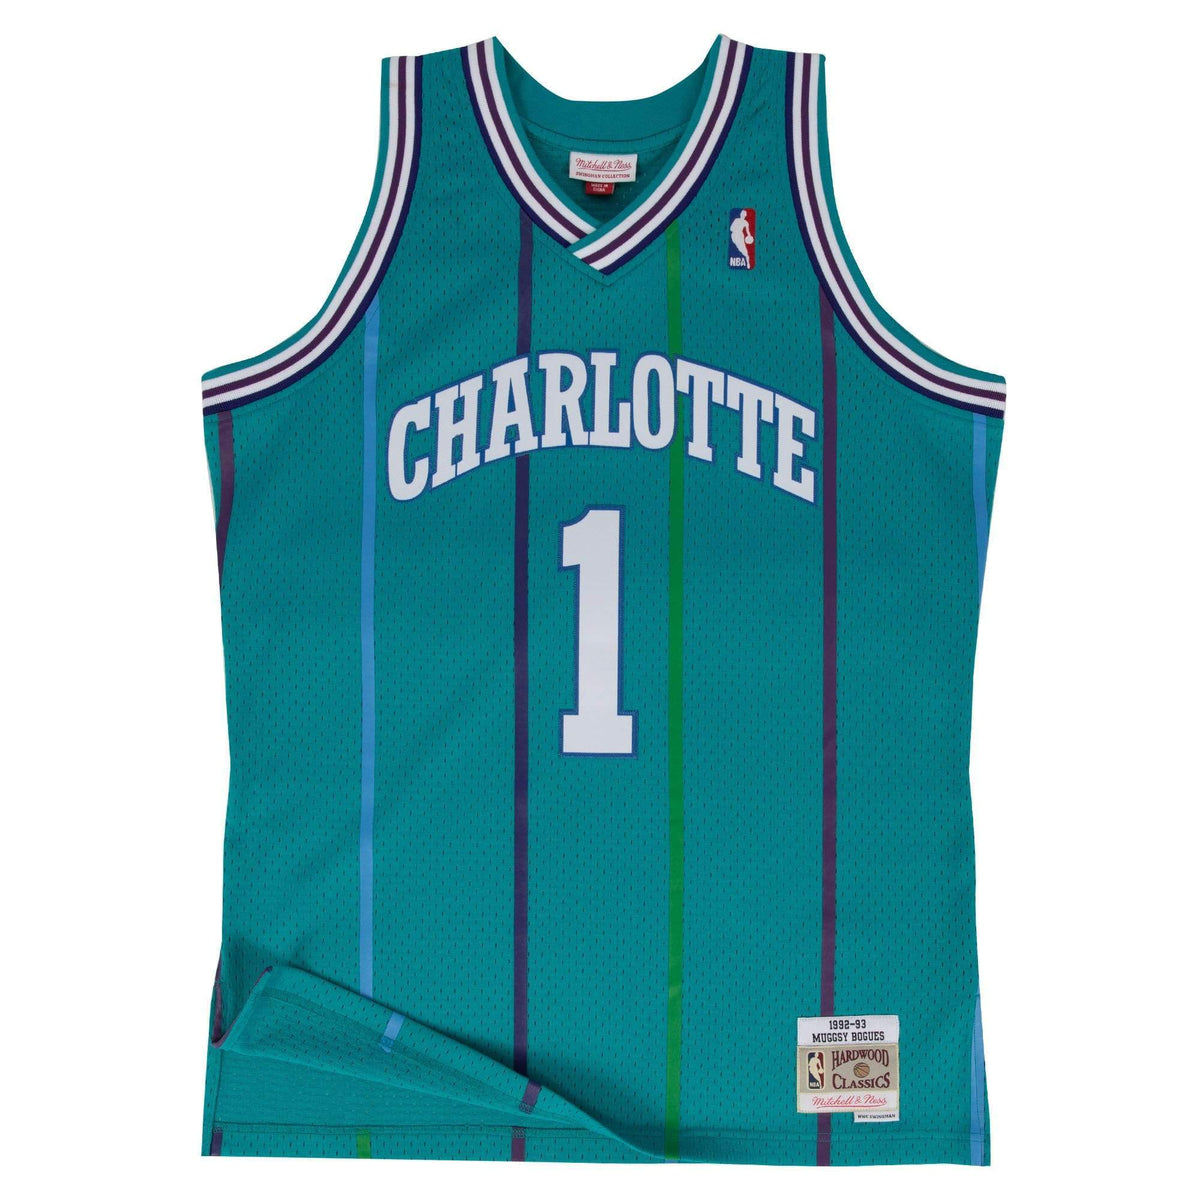 Charlotte Hornets bring back old-school NBA jersey design